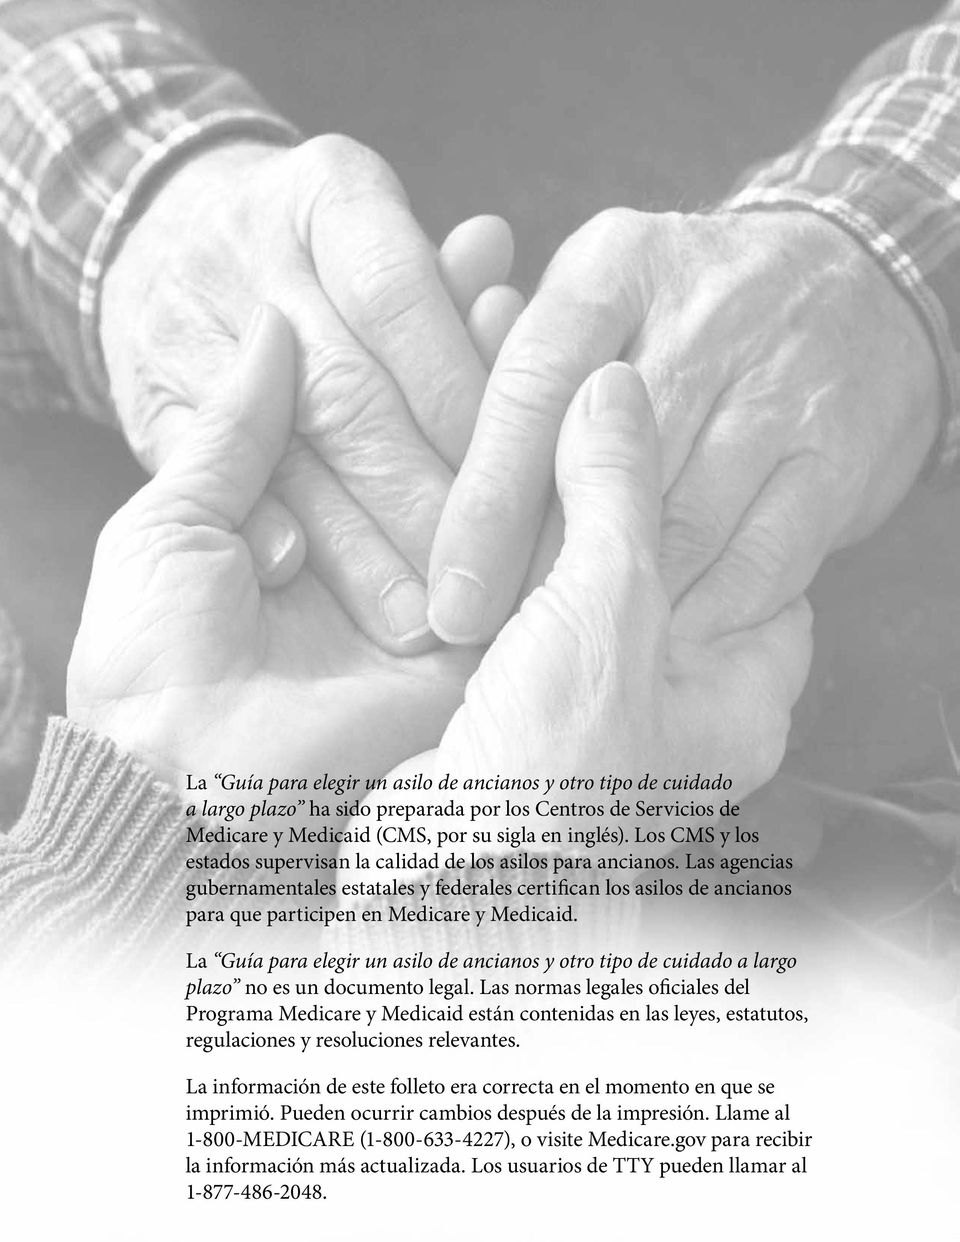 Las agencias gubernamentales estatales y federales certifican los asilos de ancianos para que participen en Medicare y Medicaid.